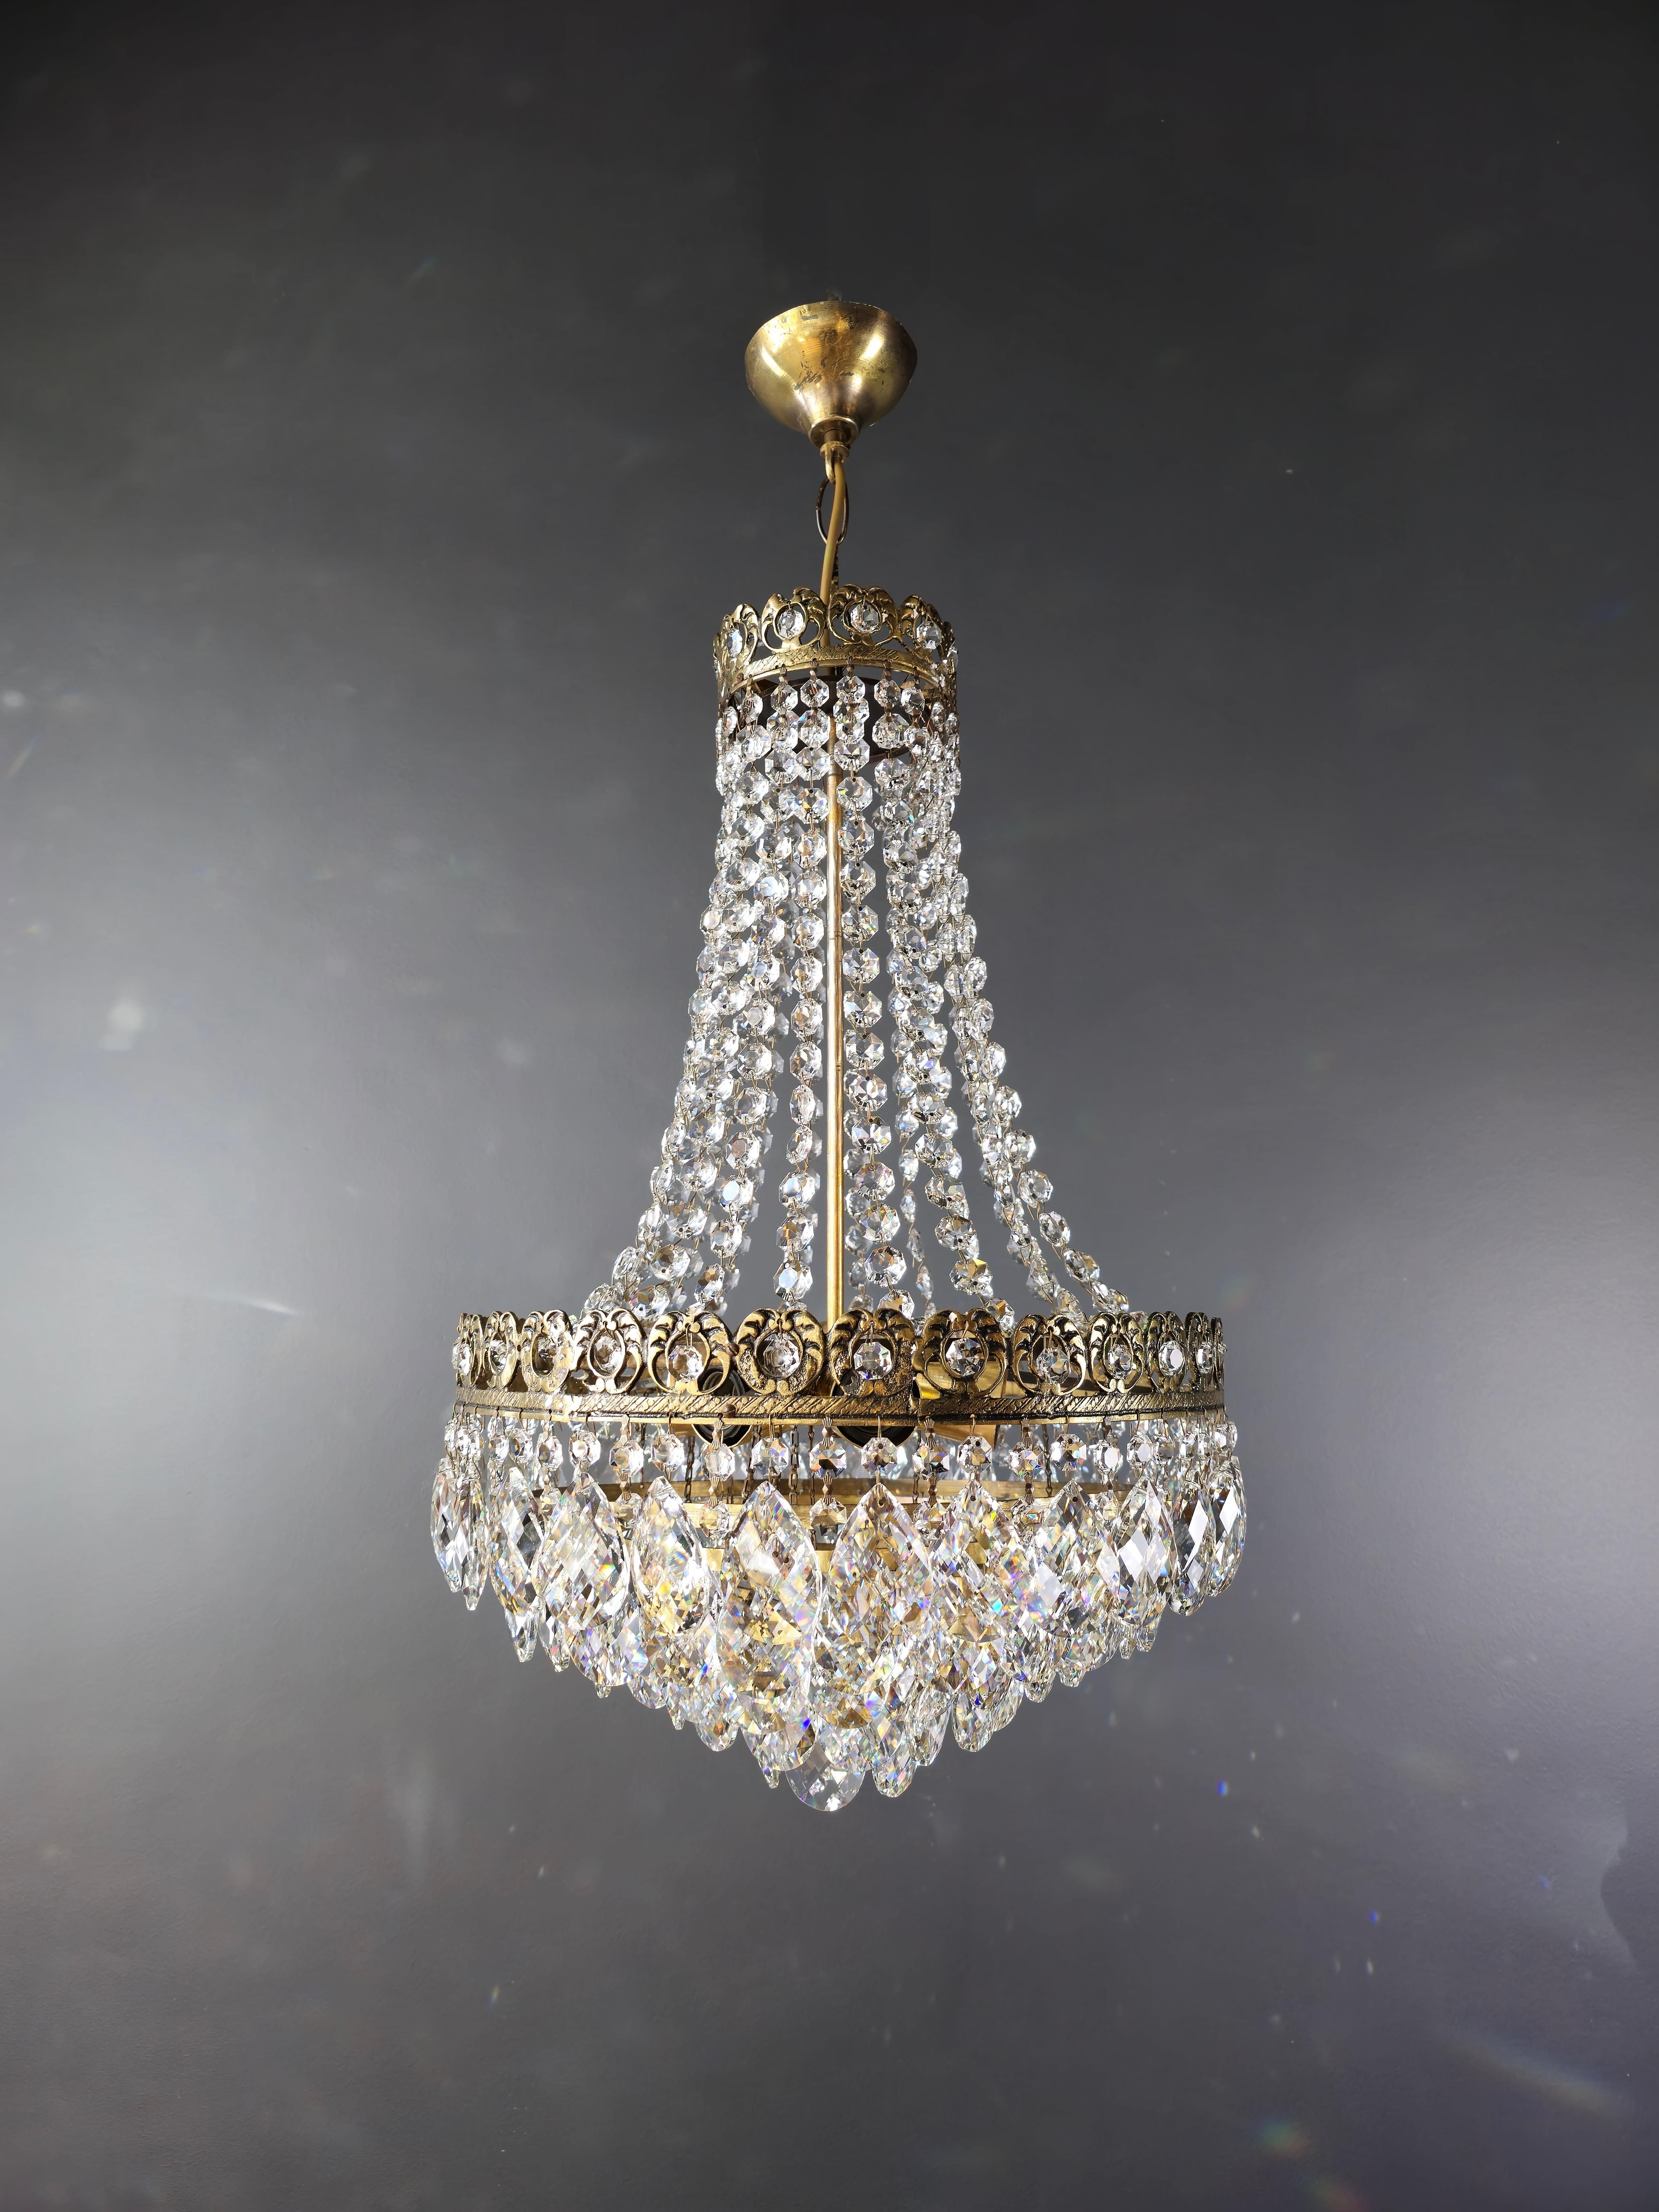 European Basket Chandelier Brass Empire Crystal Ceiling Antique Art Nouveau For Sale